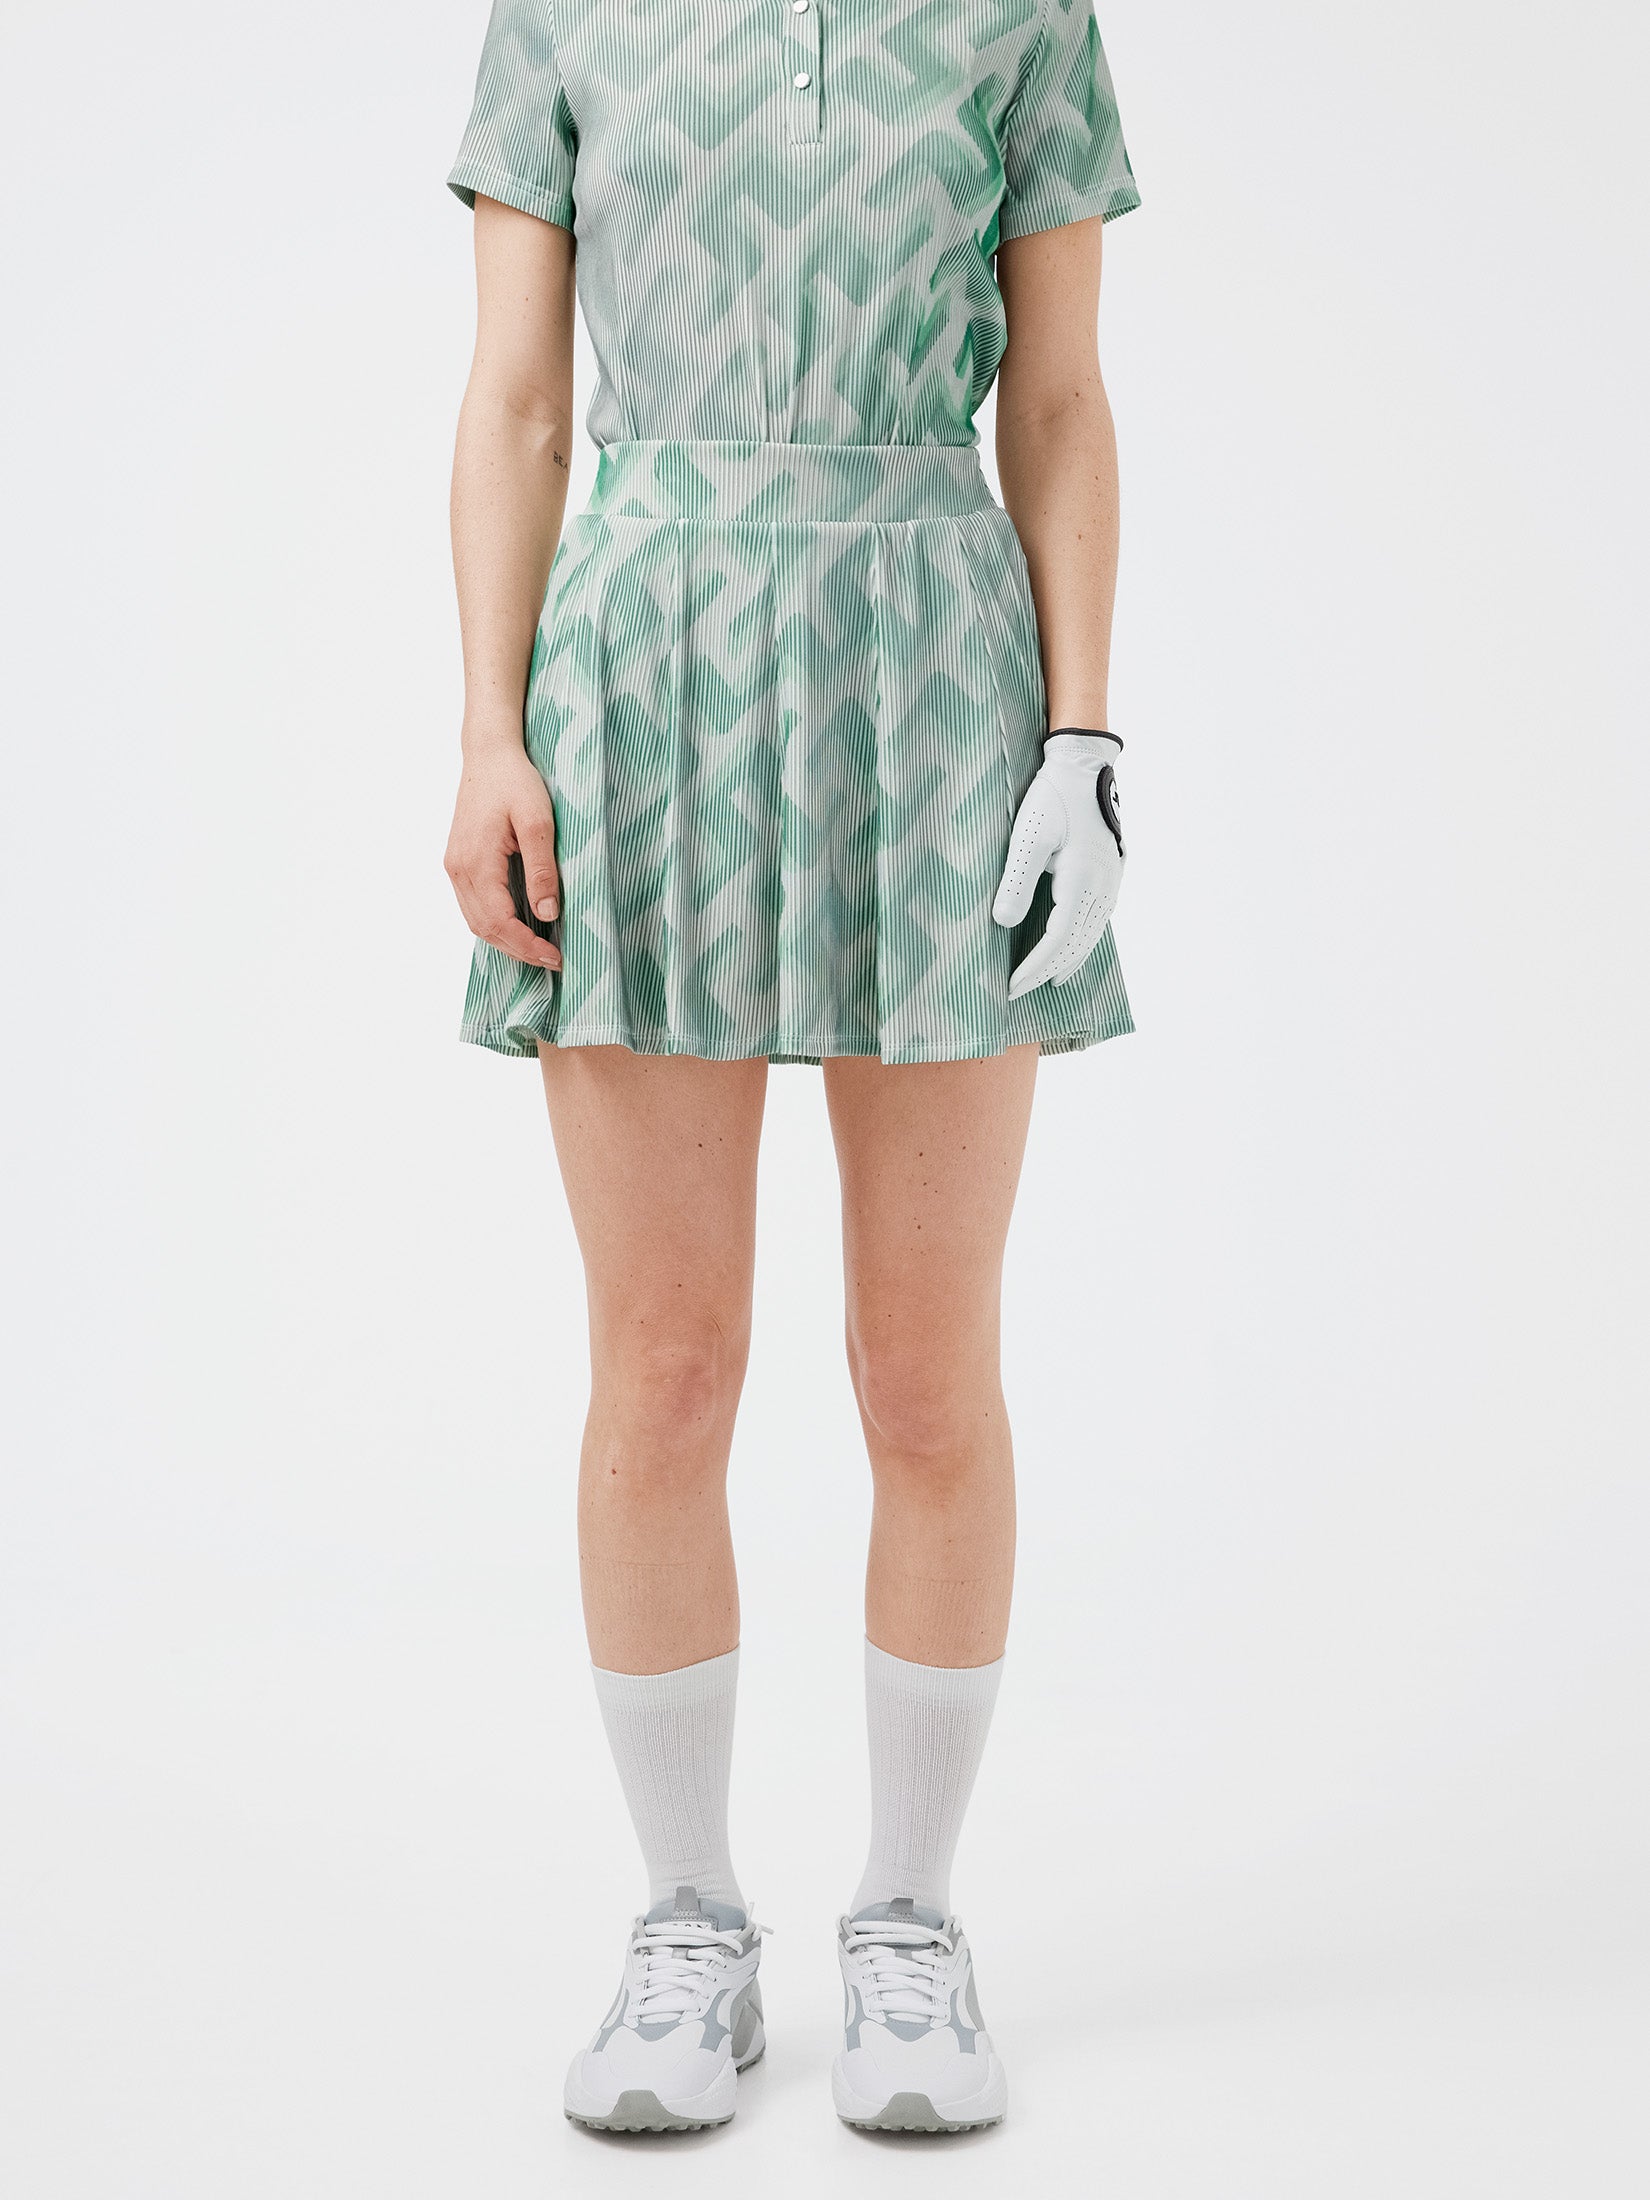 J.LINDEBERG Jolie 3D Print Golf Skirt